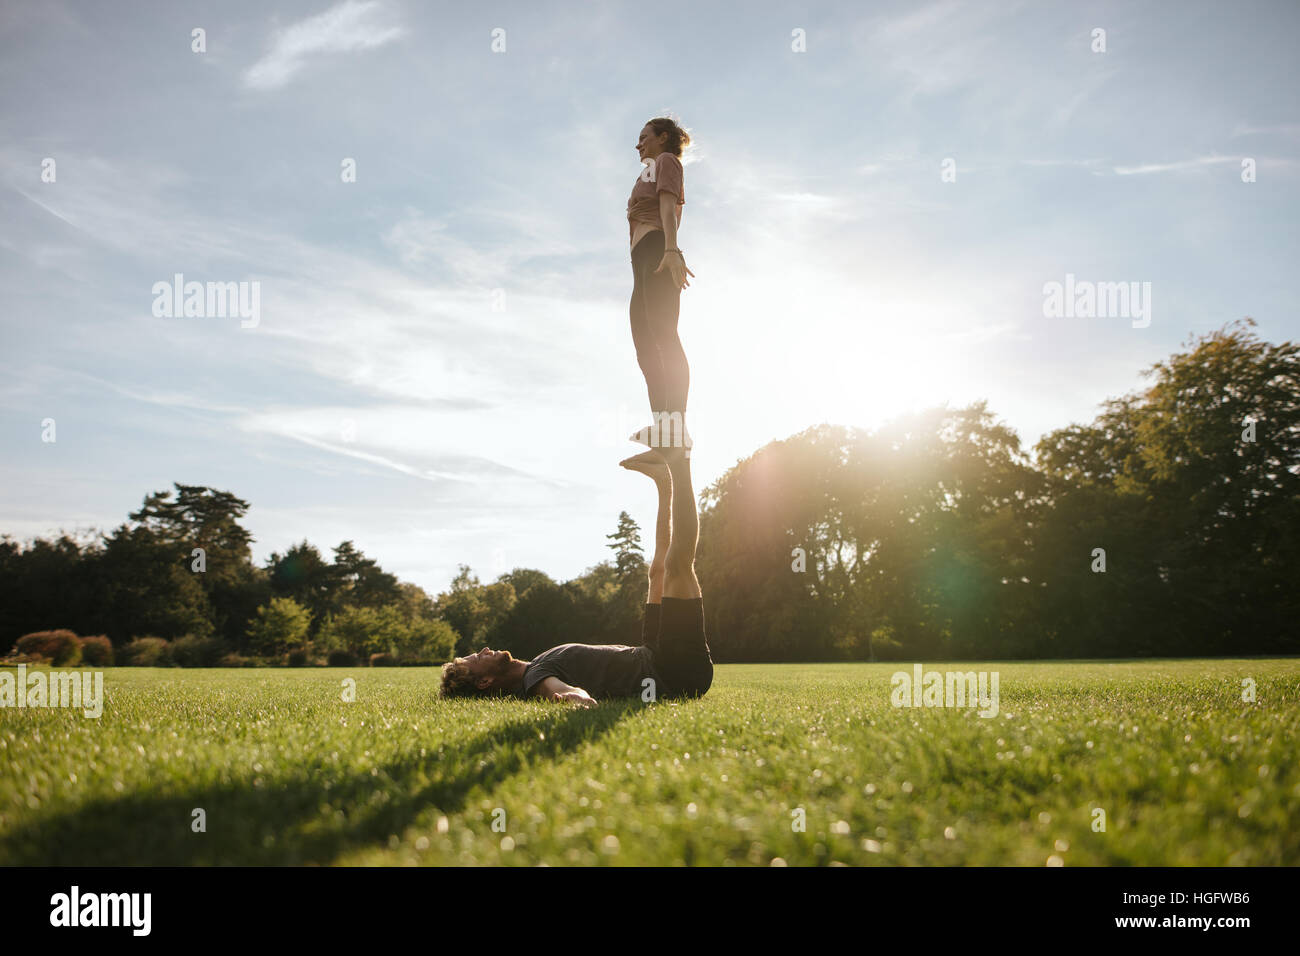 Colocar par hacer ejercicio de yoga acrobático en el parque. Hombre tumbado sobre la hierba y mujer equilibrio sobre sus pies. Foto de stock